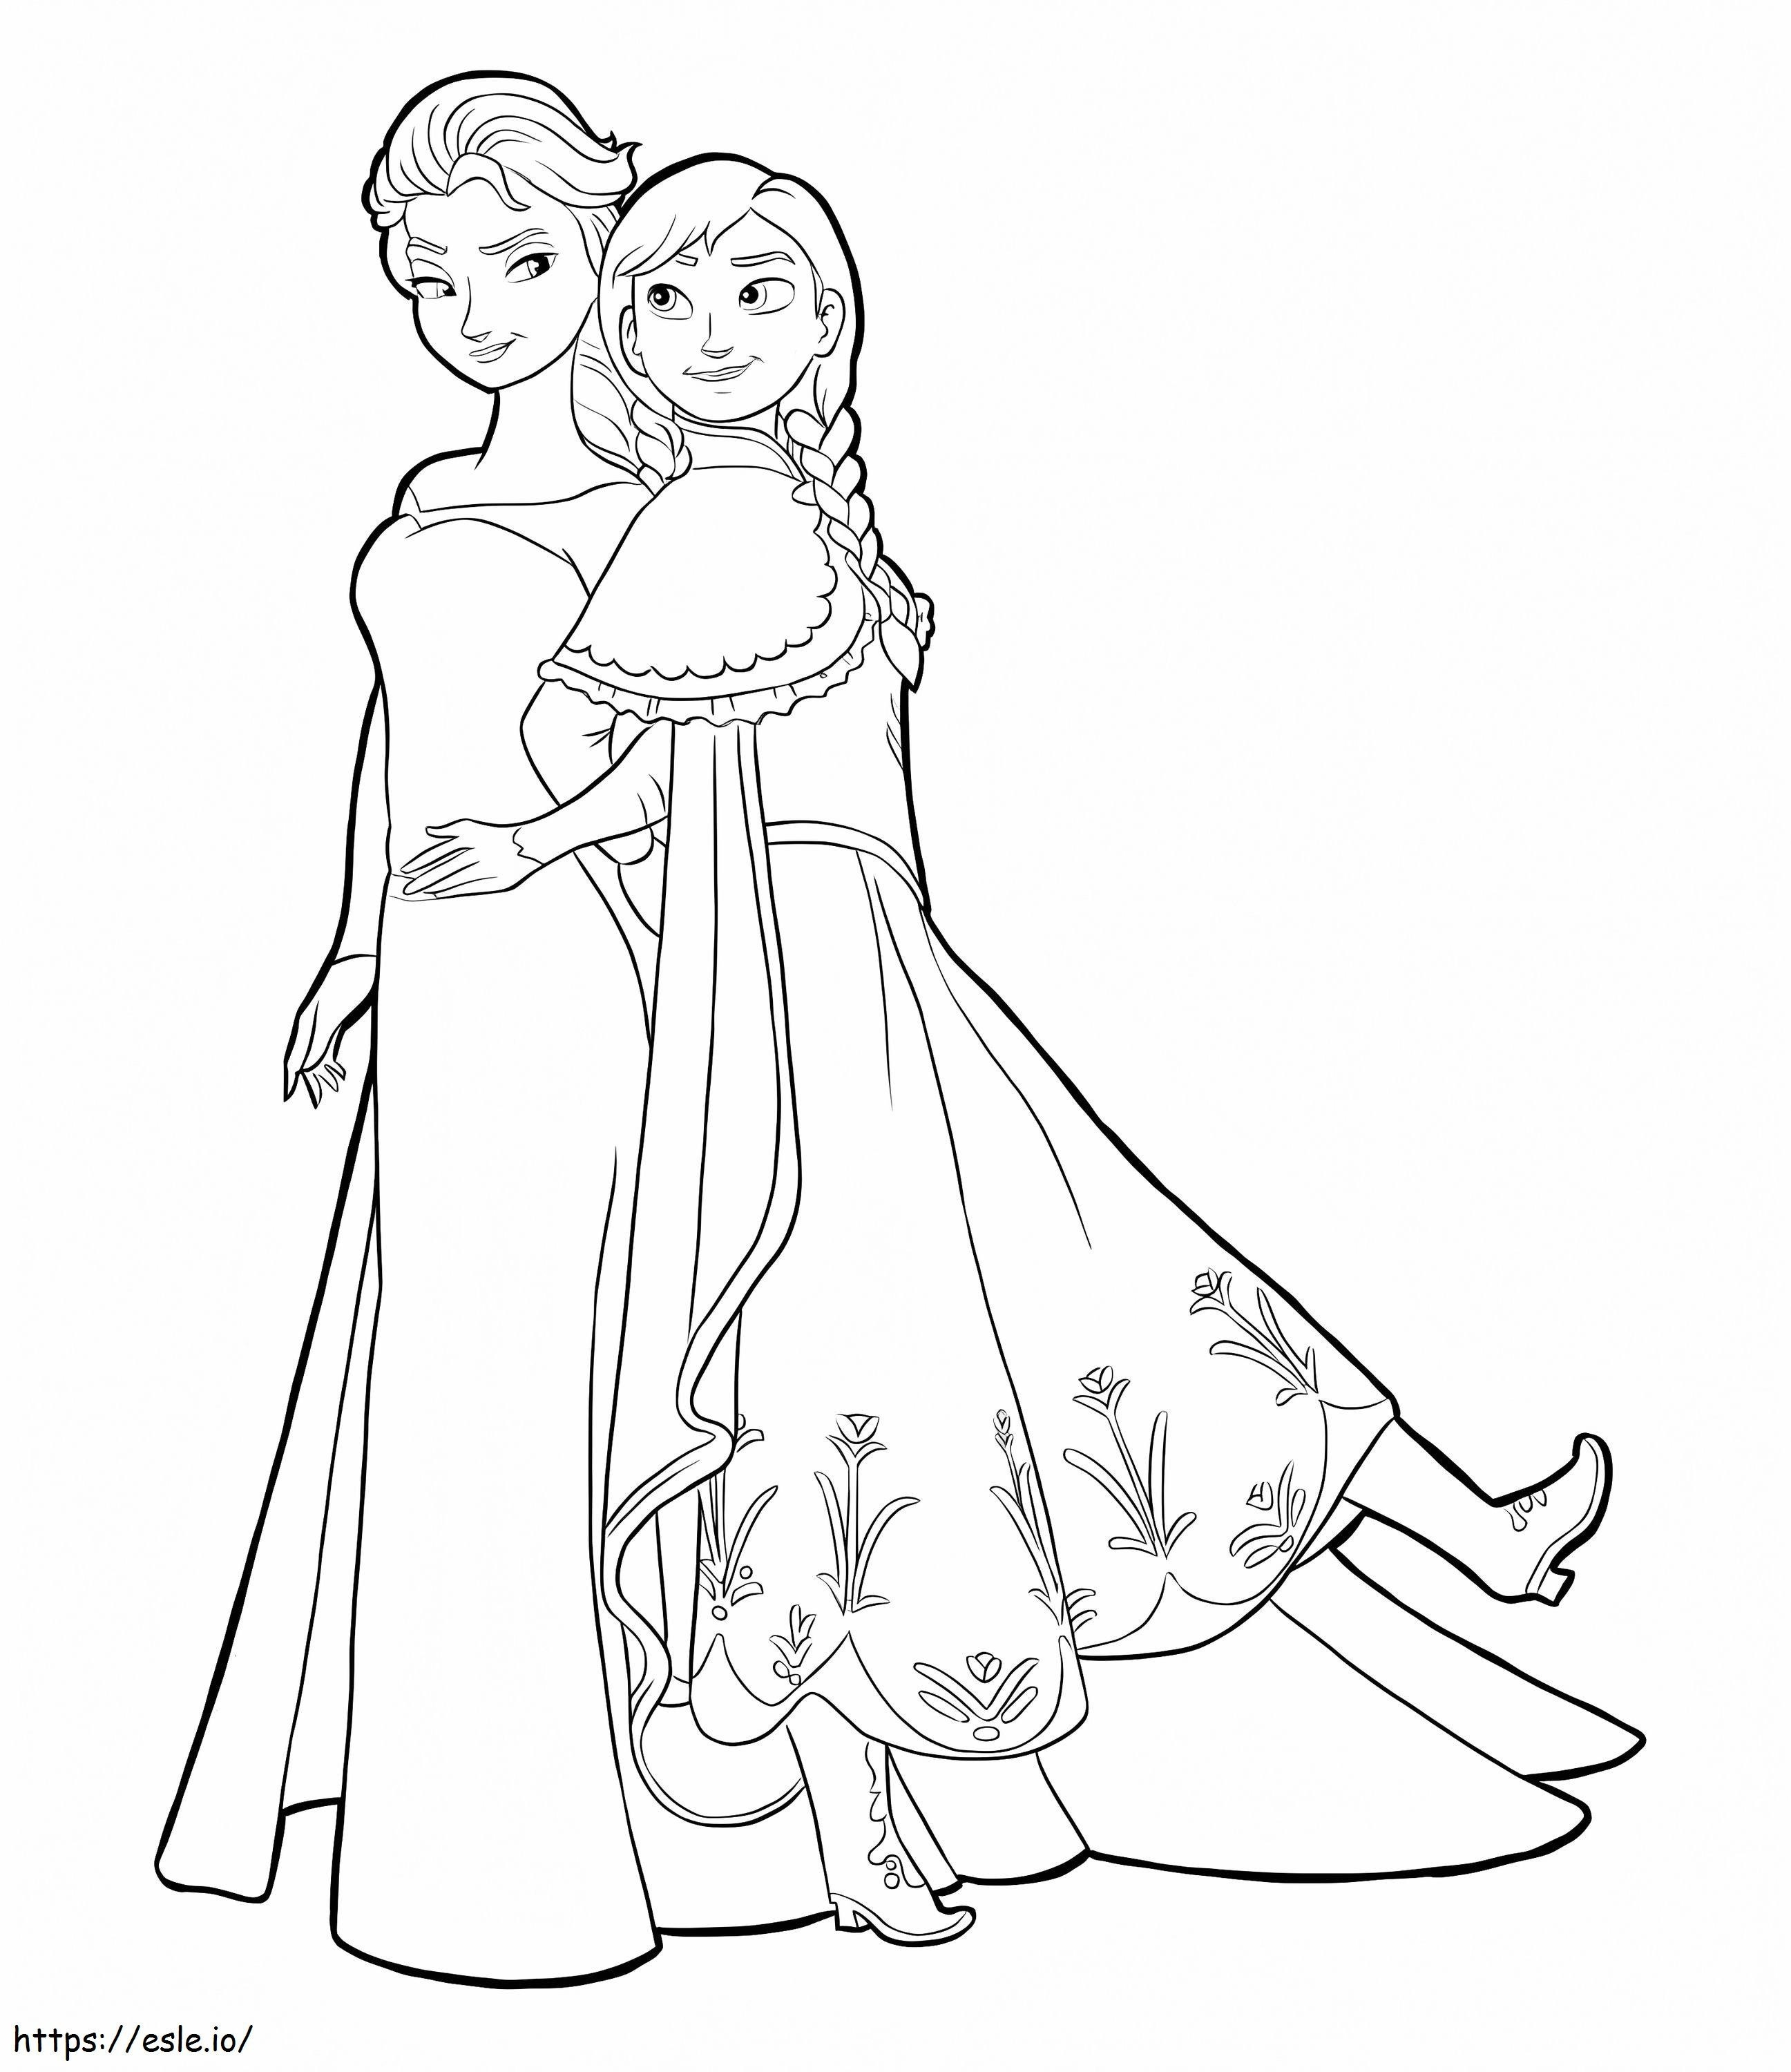 Anna abrazando a Elsa para colorear